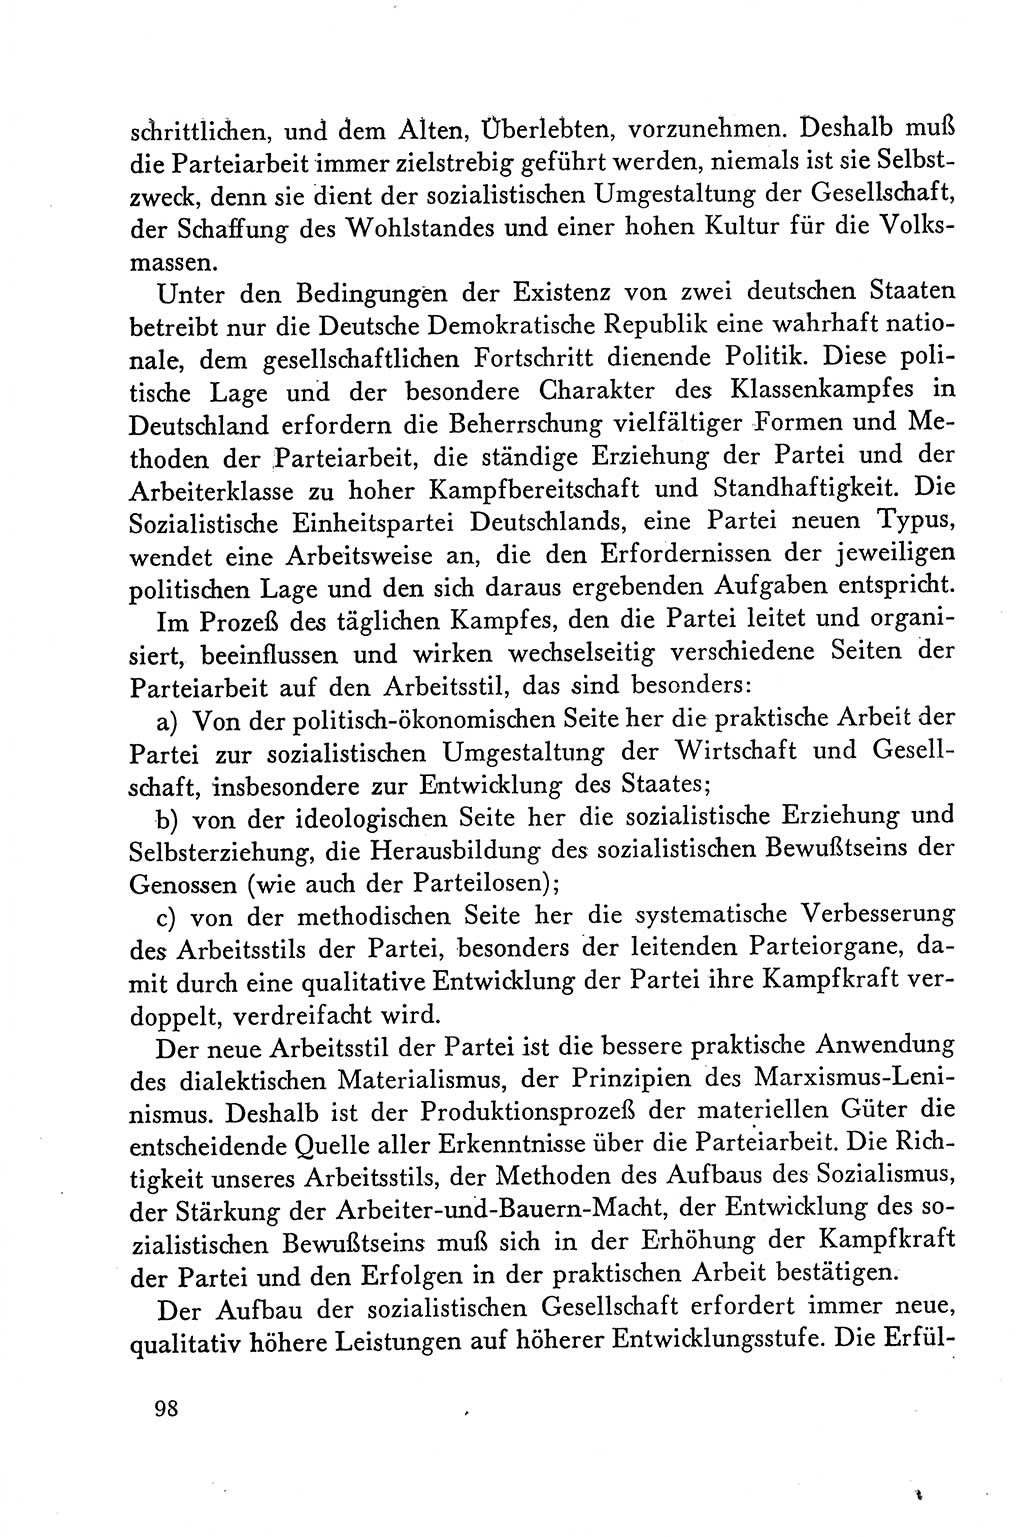 Dokumente der Sozialistischen Einheitspartei Deutschlands (SED) [Deutsche Demokratische Republik (DDR)] 1958-1959, Seite 98 (Dok. SED DDR 1958-1959, S. 98)